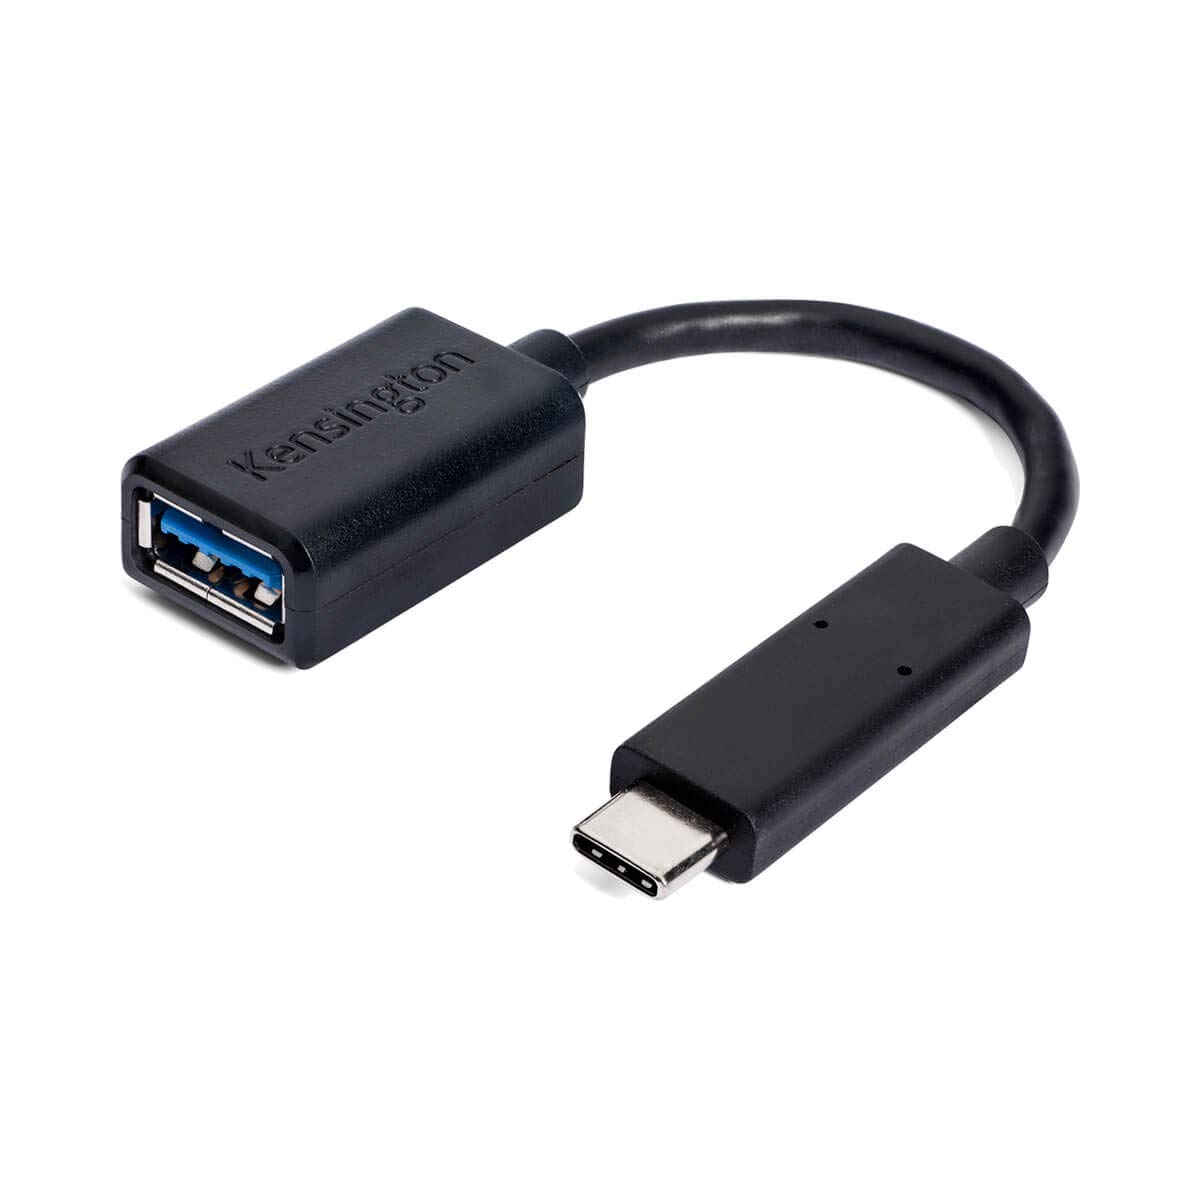 Kensington USB-C auf USB-A Adapter CA1000, USB-C auf einen Standard-USB-A-Adapter mit reversiblem USB-C-Anschluss, bis zu 3 AMP-Ladung und schneller Datentransfer, K33992WW